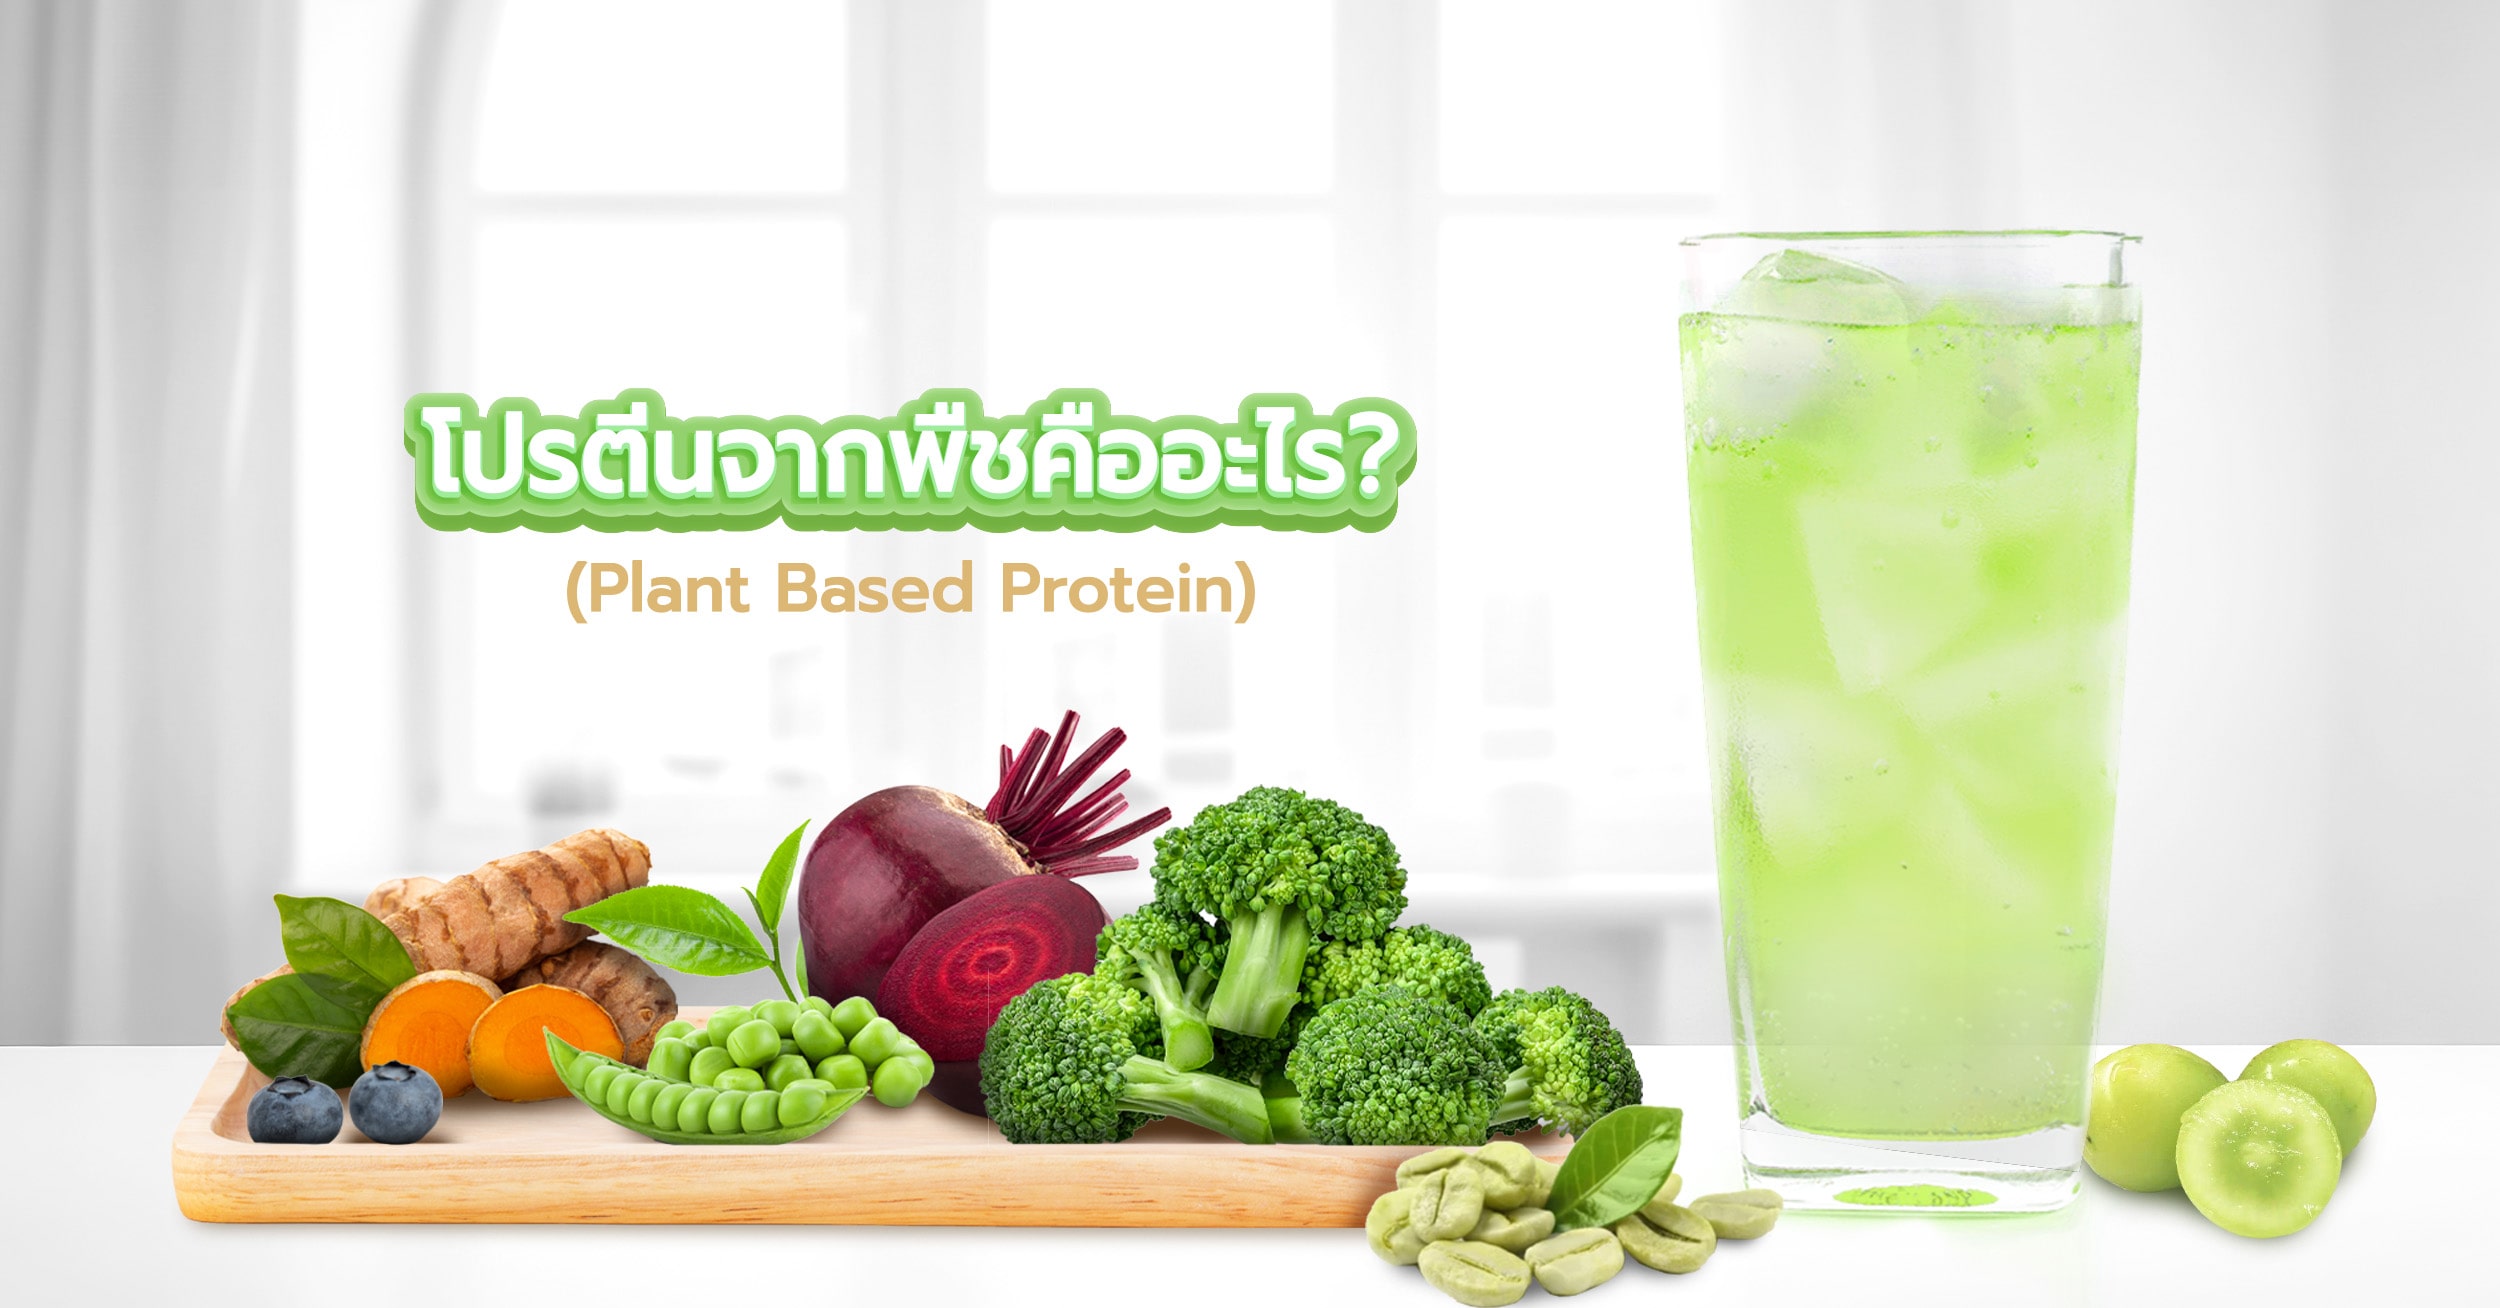 โปรตีนพืช คือ สารอาหารโปรตีนที่ได้จากพืชและผลไม้ หรือ จากธัญพืชและถั่ว